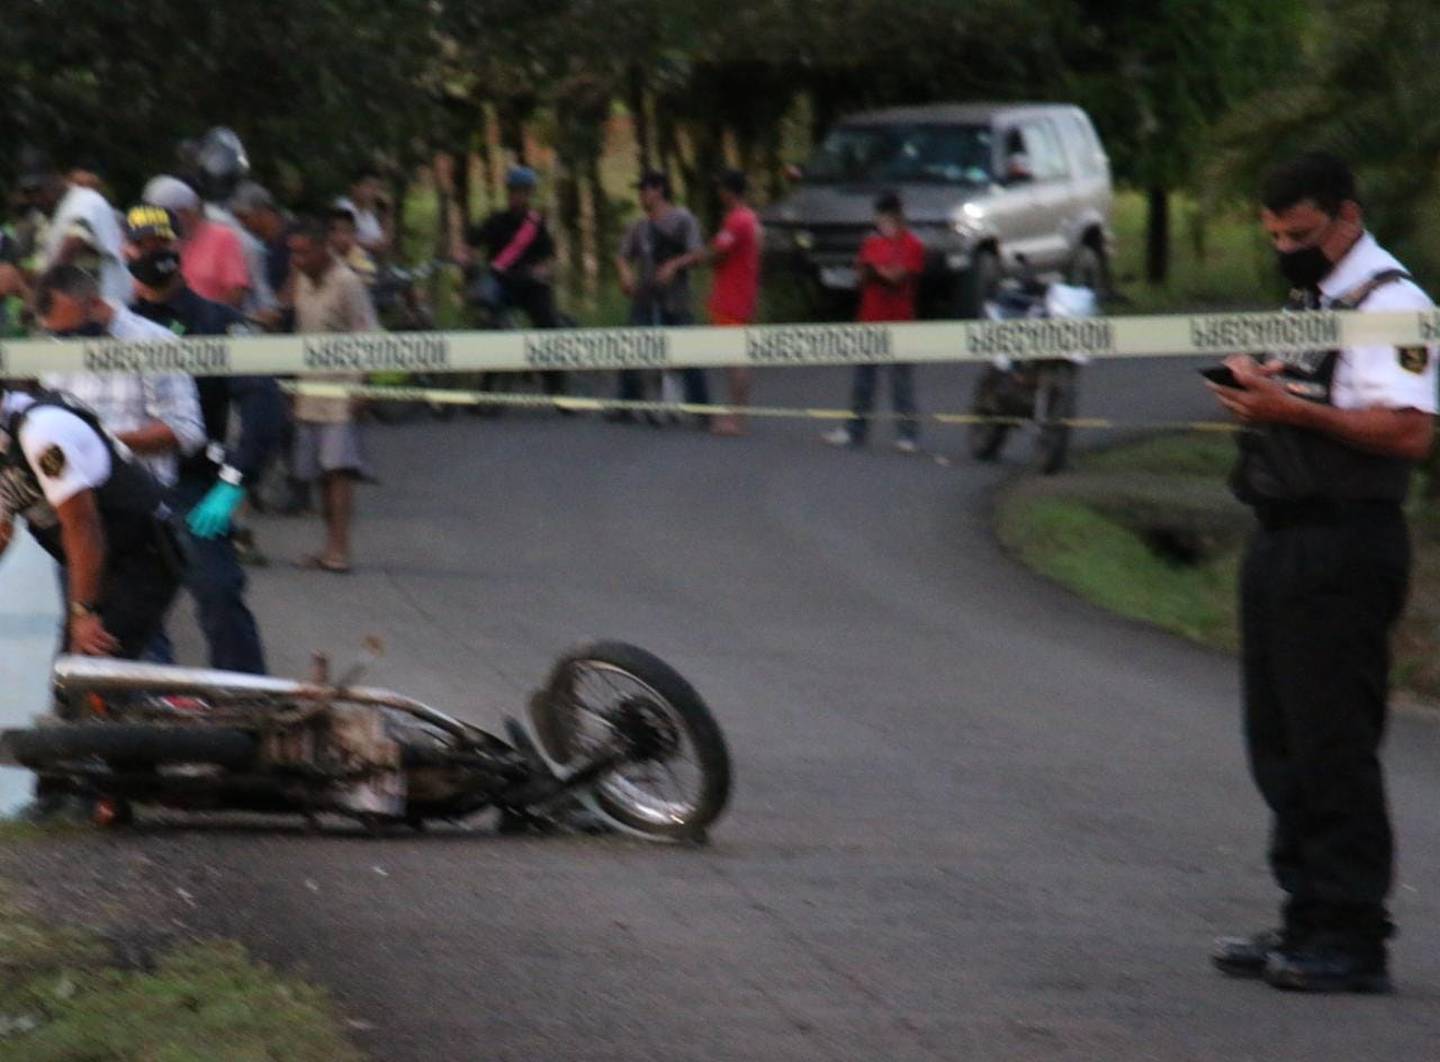 Muchacha de unos 17 años muere al chocar en moto contra alcantarilla. Foto Reyner Montero.